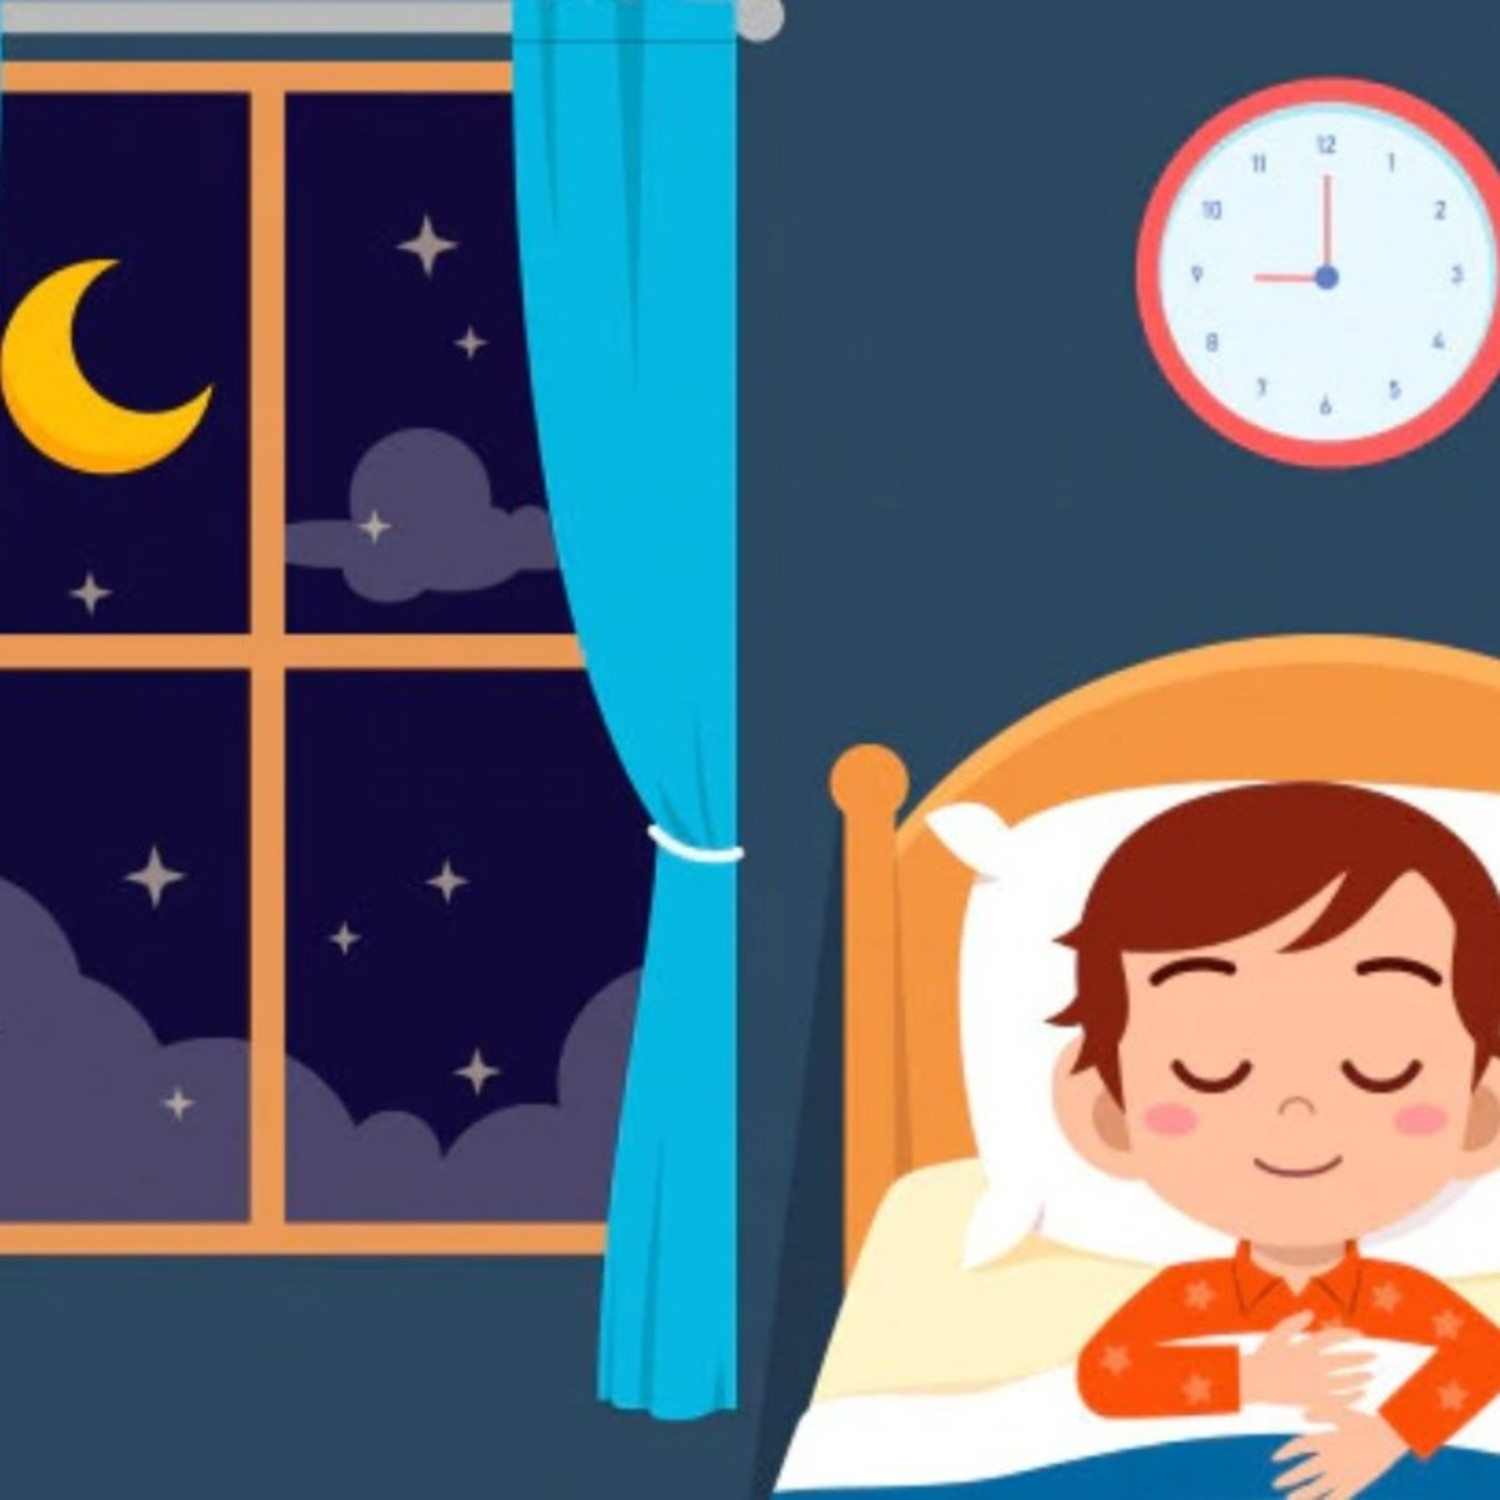 مقاله ای درباره راهکارهایی ساده برای داشتن خواب عمیق.